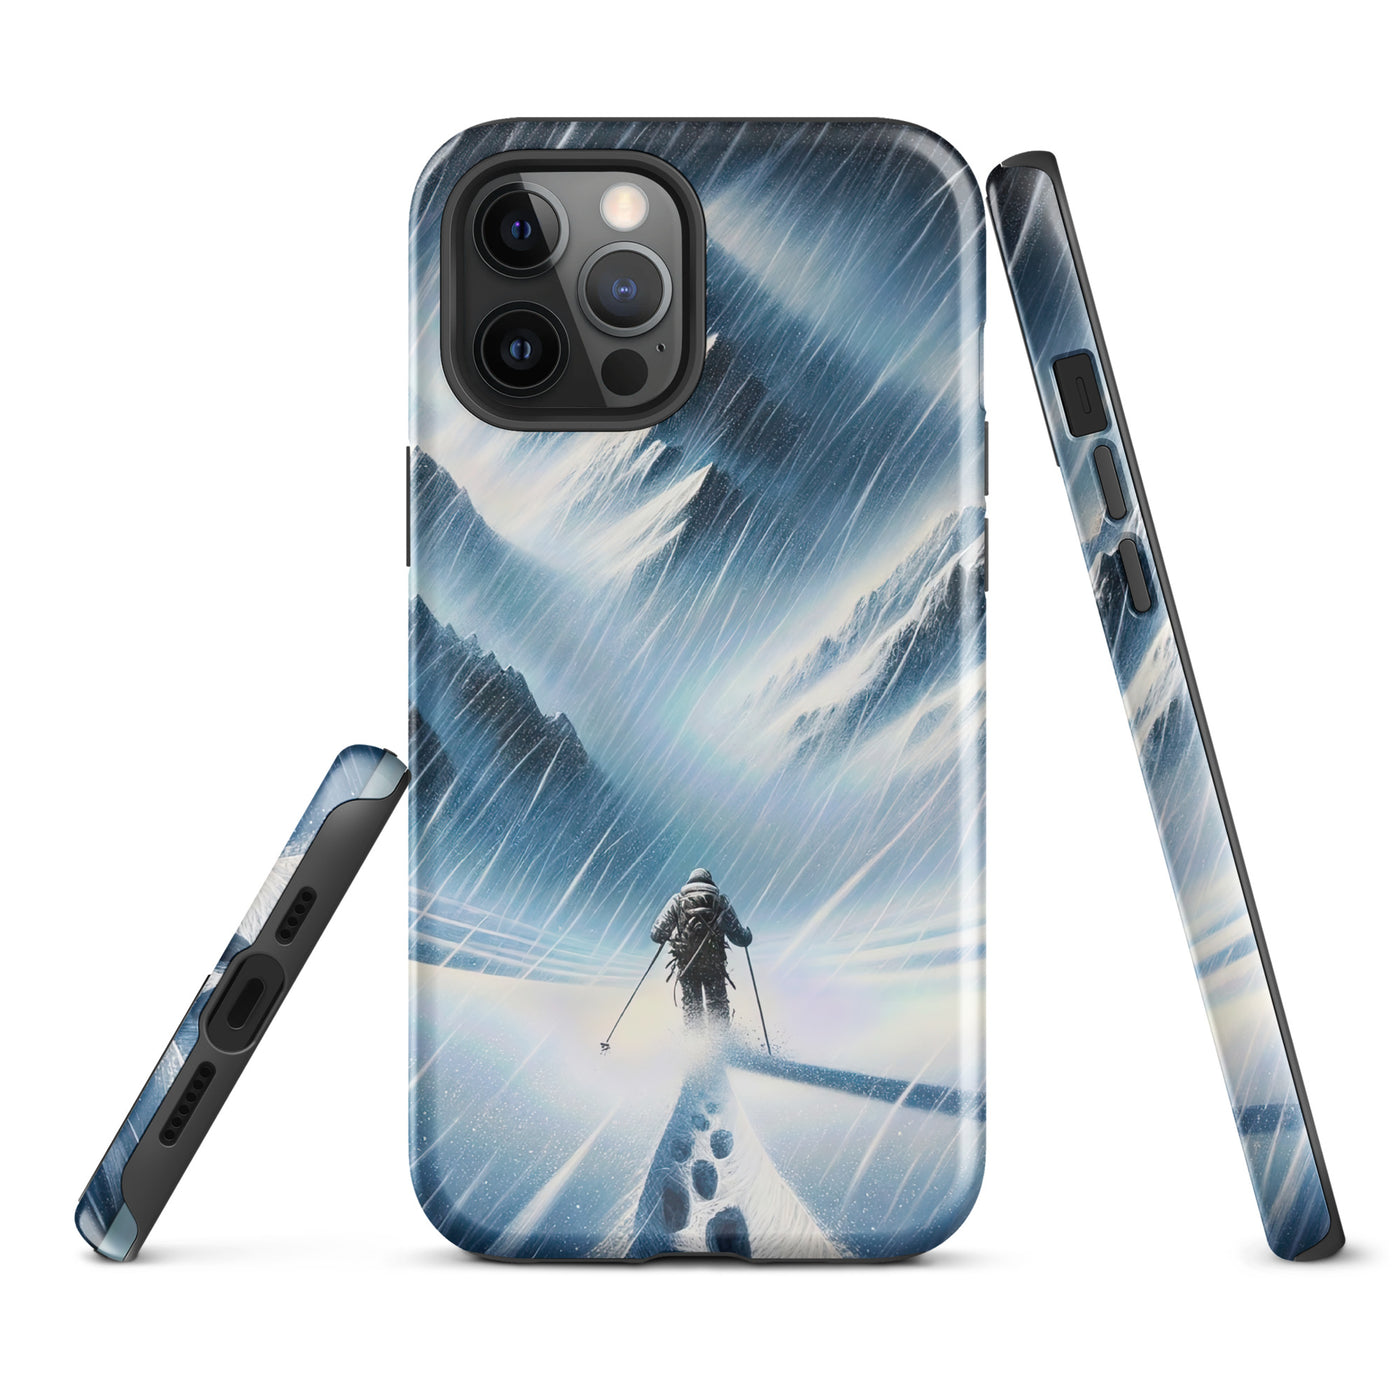 Wanderer und Bergsteiger im Schneesturm: Acrylgemälde der Alpen - iPhone Schutzhülle (robust) wandern xxx yyy zzz iPhone 12 Pro Max